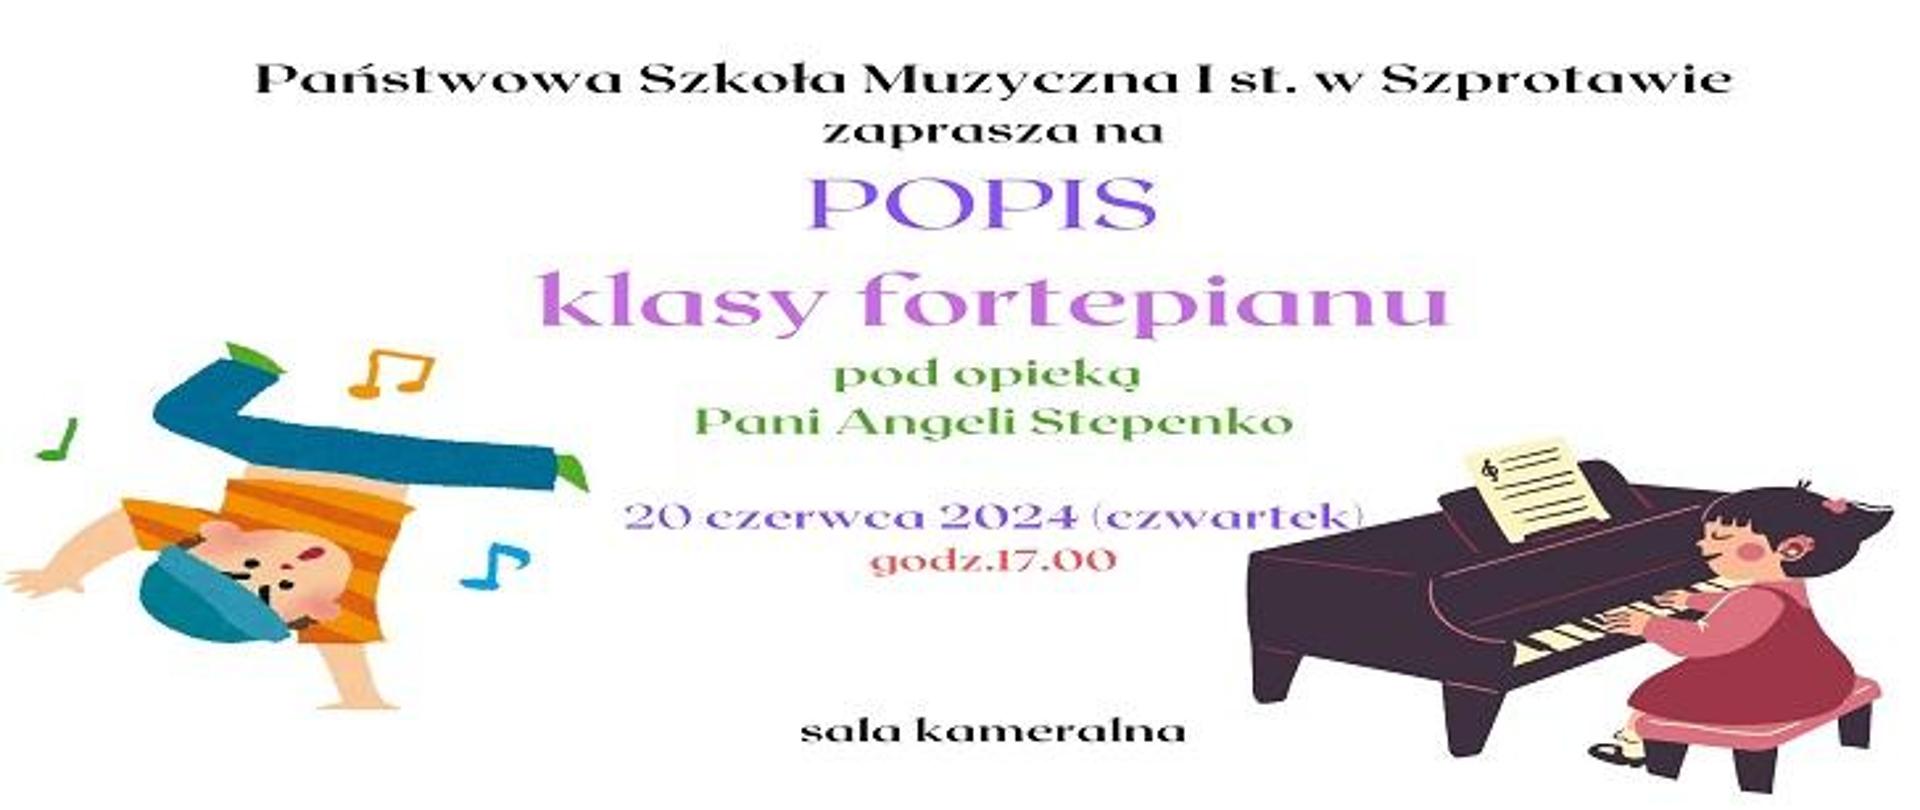  Państwowa Szkoła Muzyczna I st. w Szprotawie zaprasza na POPIS klasy fortepianu pod opieką Pani Angeli Stepenko. 20 czerwca 2024 (czwartek), godz. 17.00 sala kameralna.